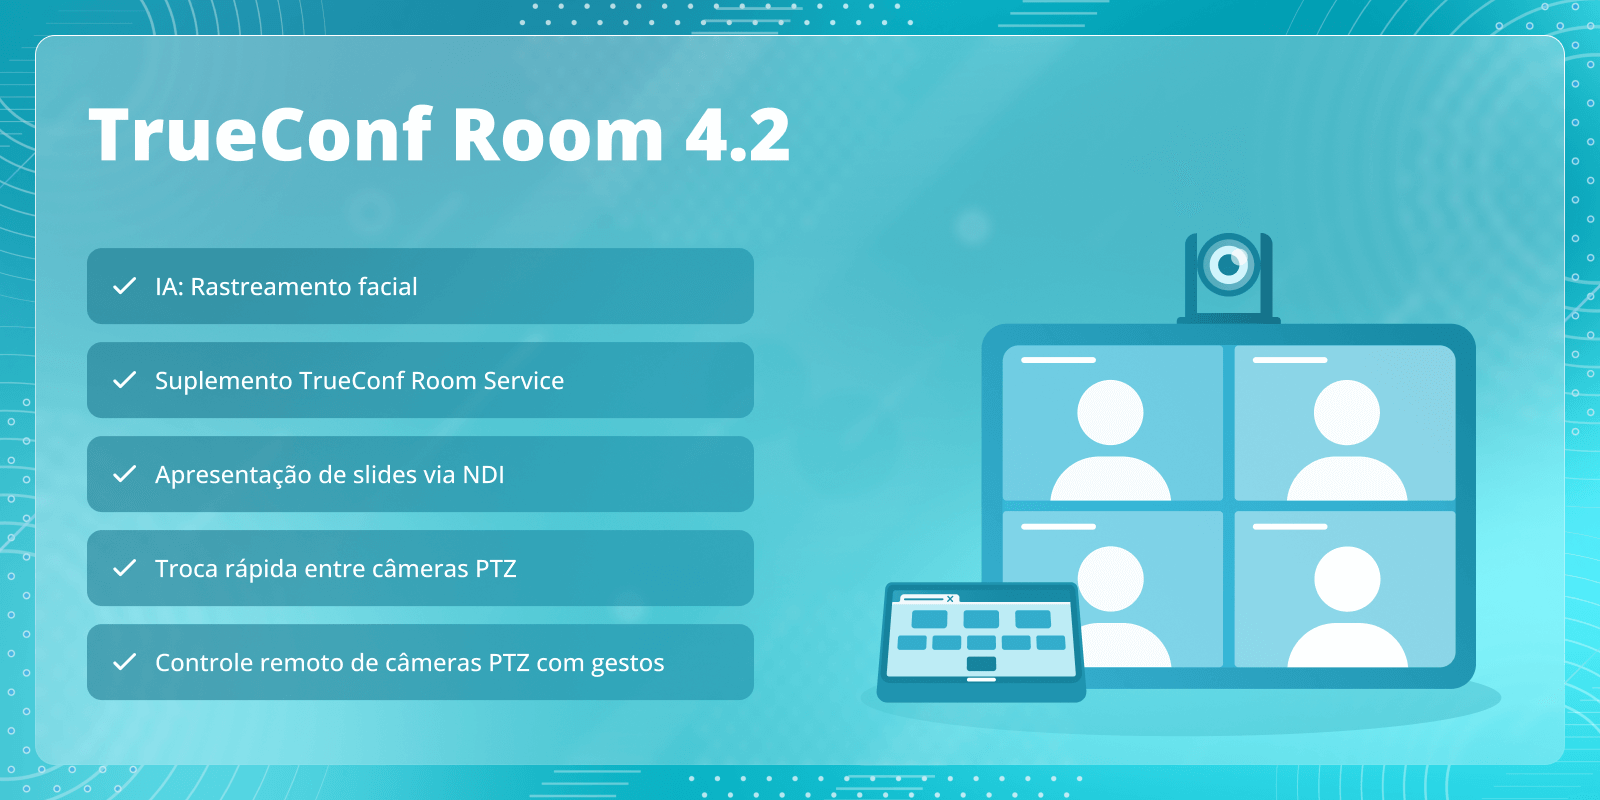 TrueConf Room 4.2: suplemento TrueConf Room Service e rastreamento facial 1